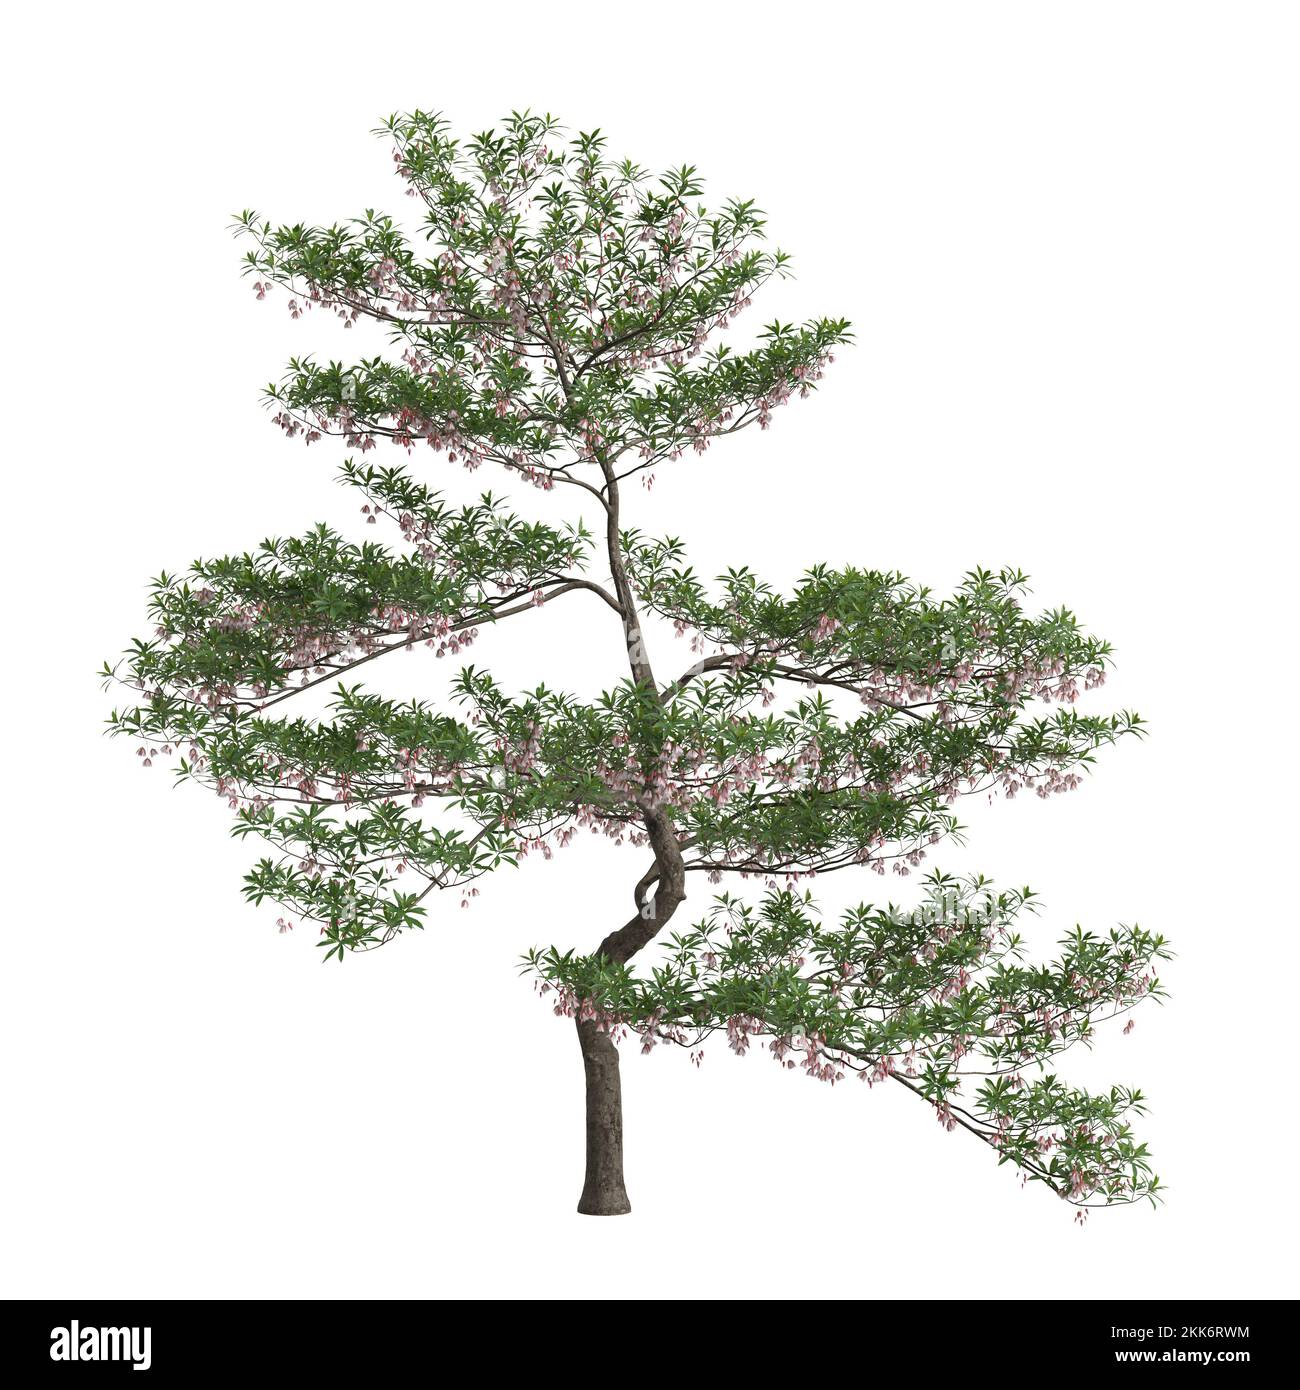 3d illustration of elaeocarpus hainanensis tree isolated on white background Stock Photo